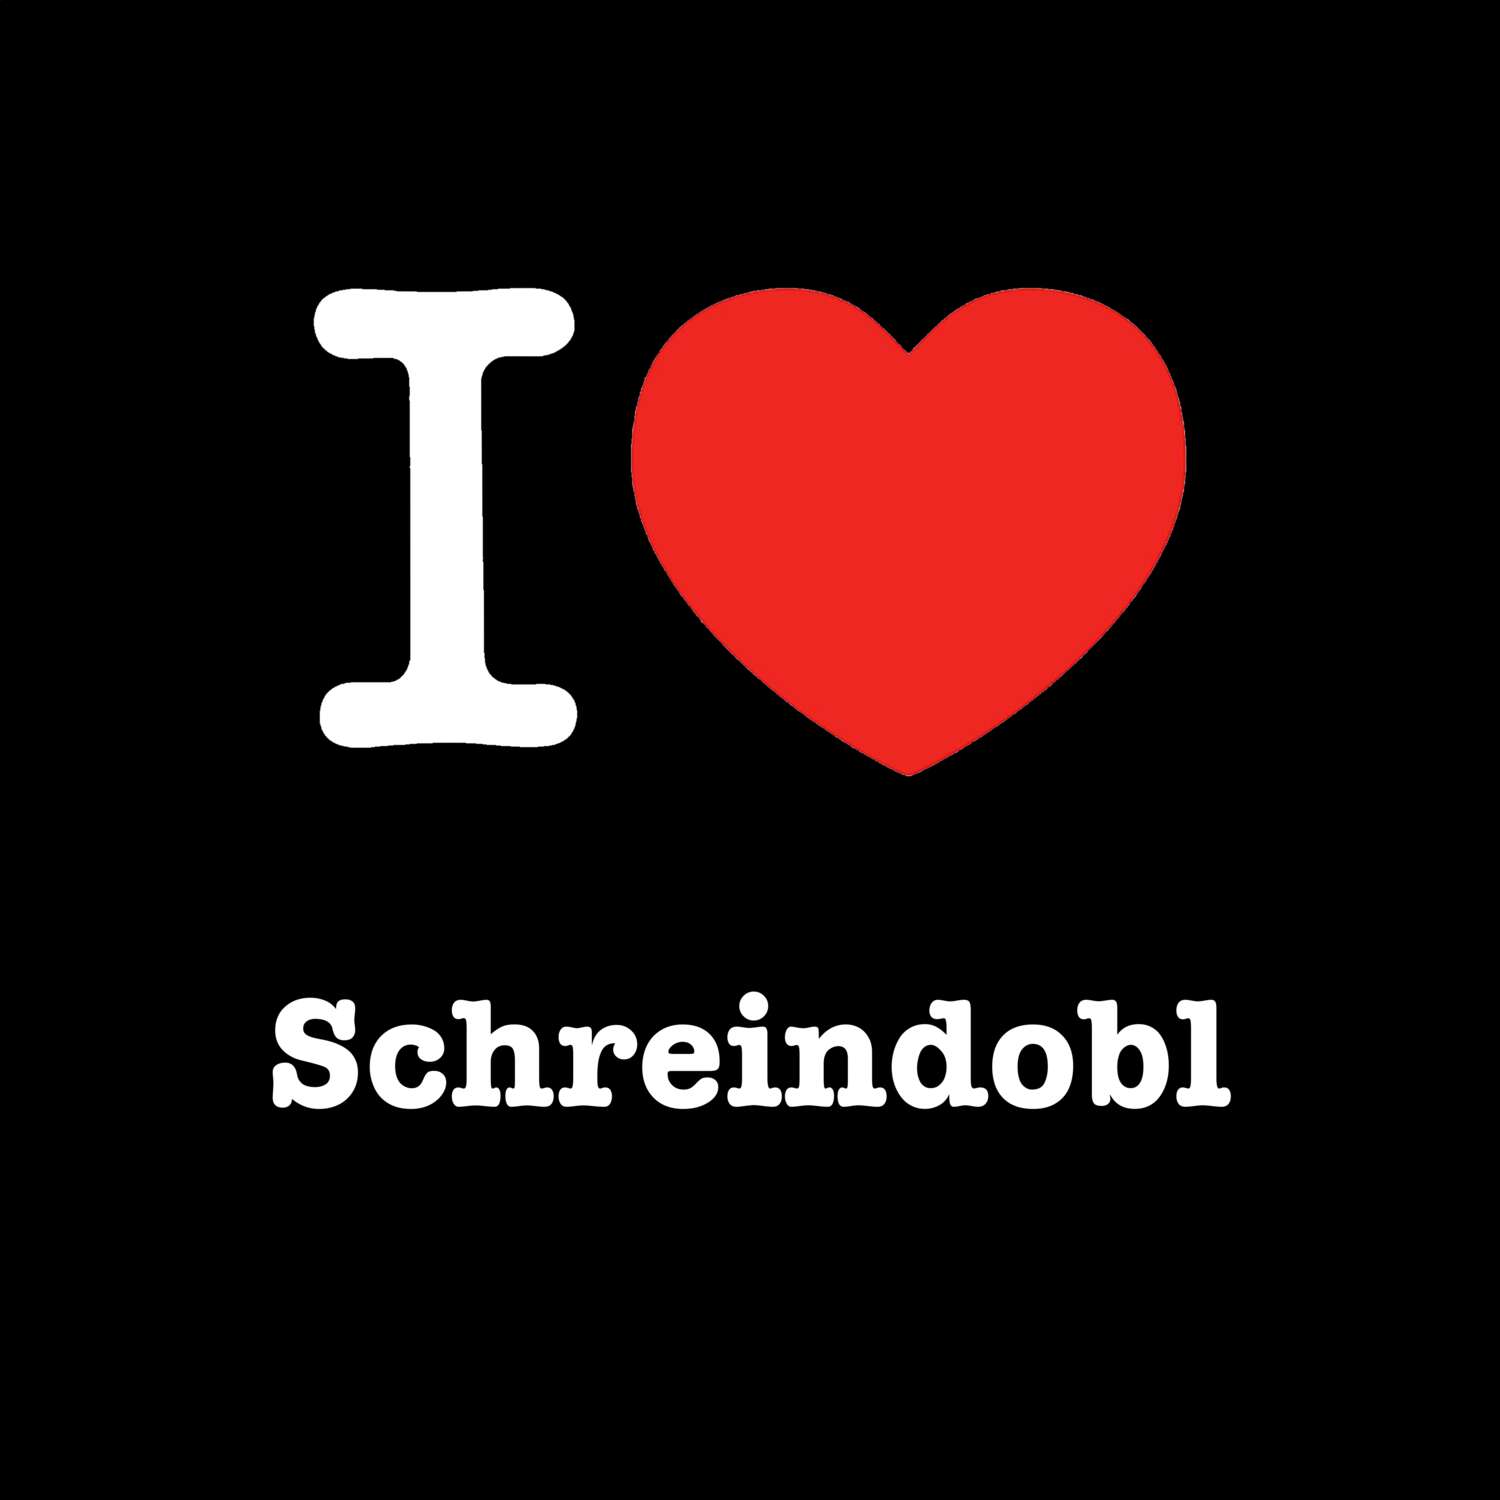 Schreindobl T-Shirt »I love«